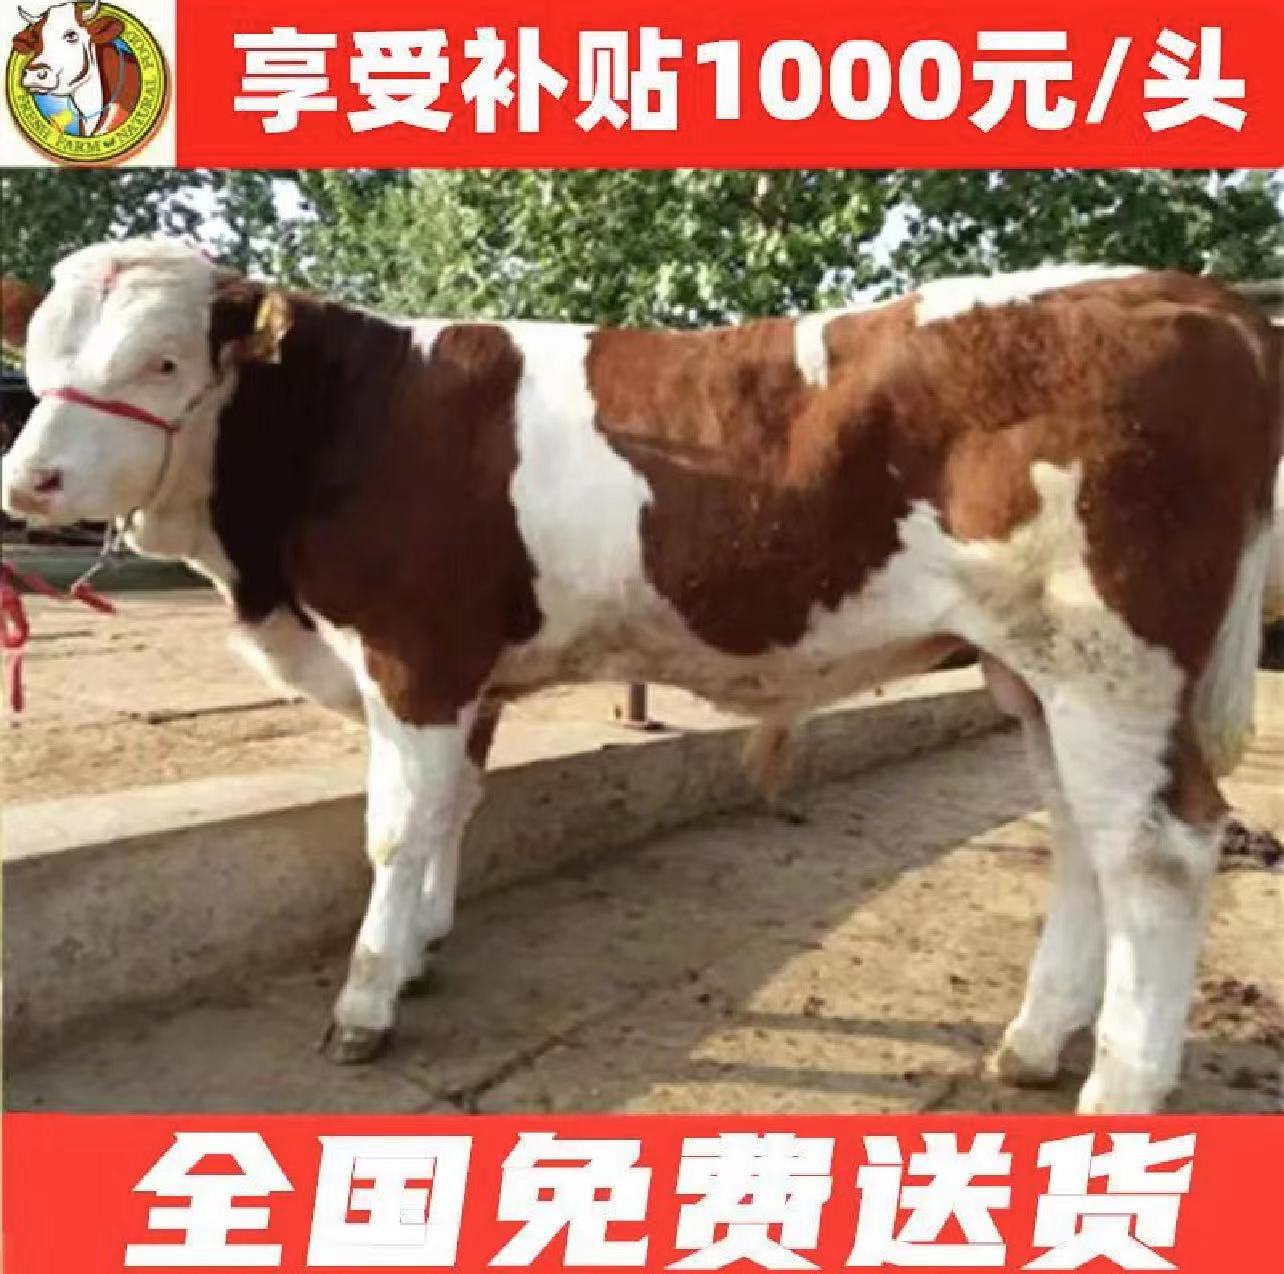 利津县出售西门塔尔牛犊，养牛就养西门塔尔，生长速度快 货到付款